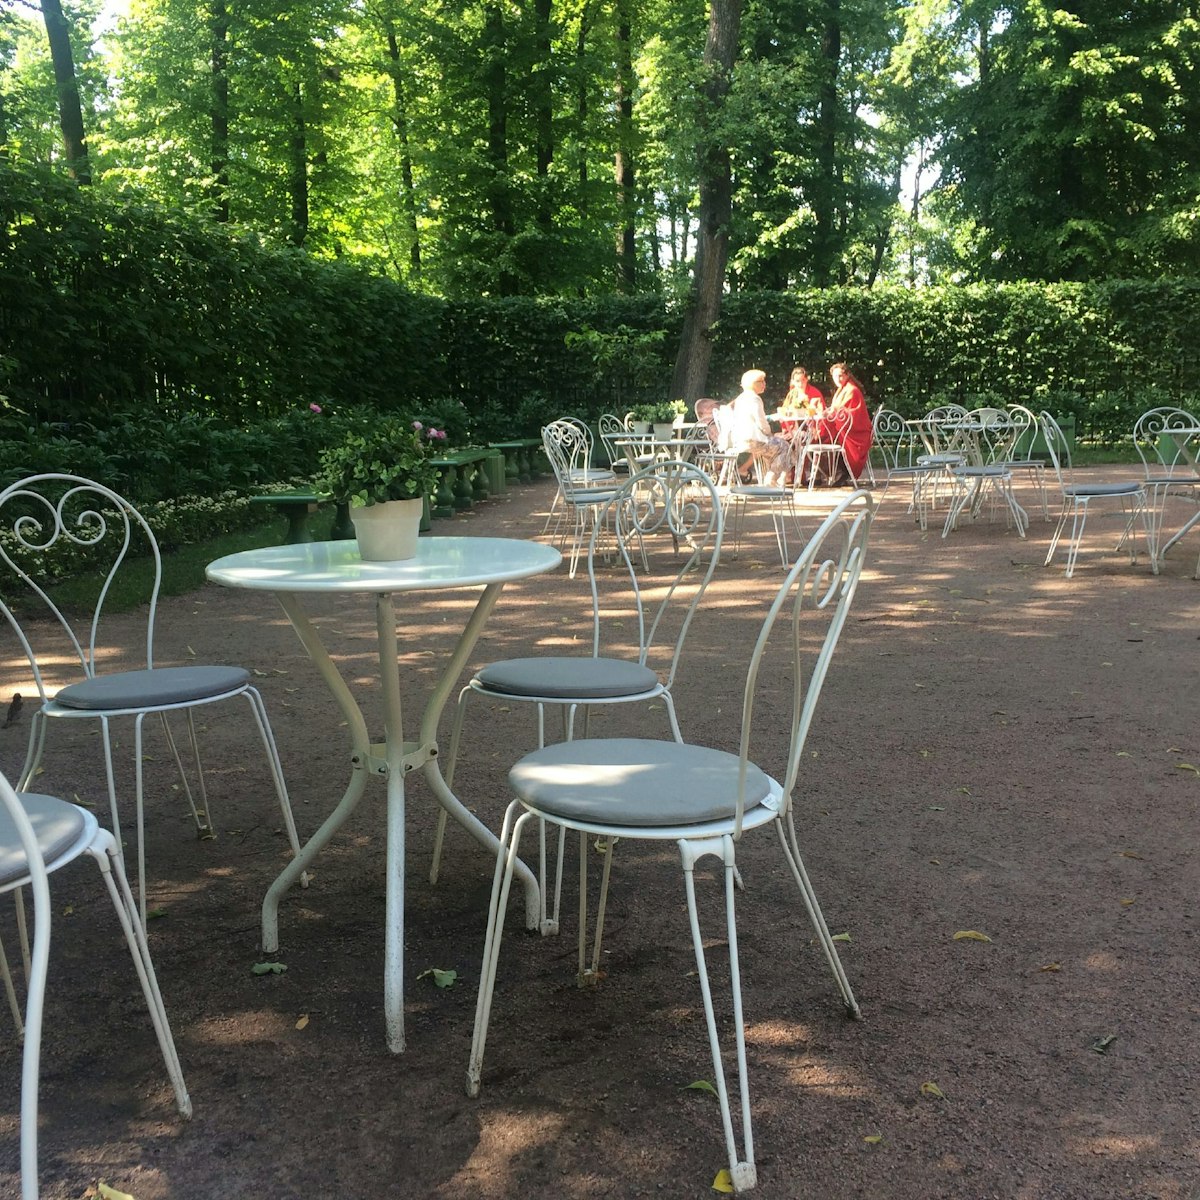 Tea House cafe in St Petersburg's Summer Garden.